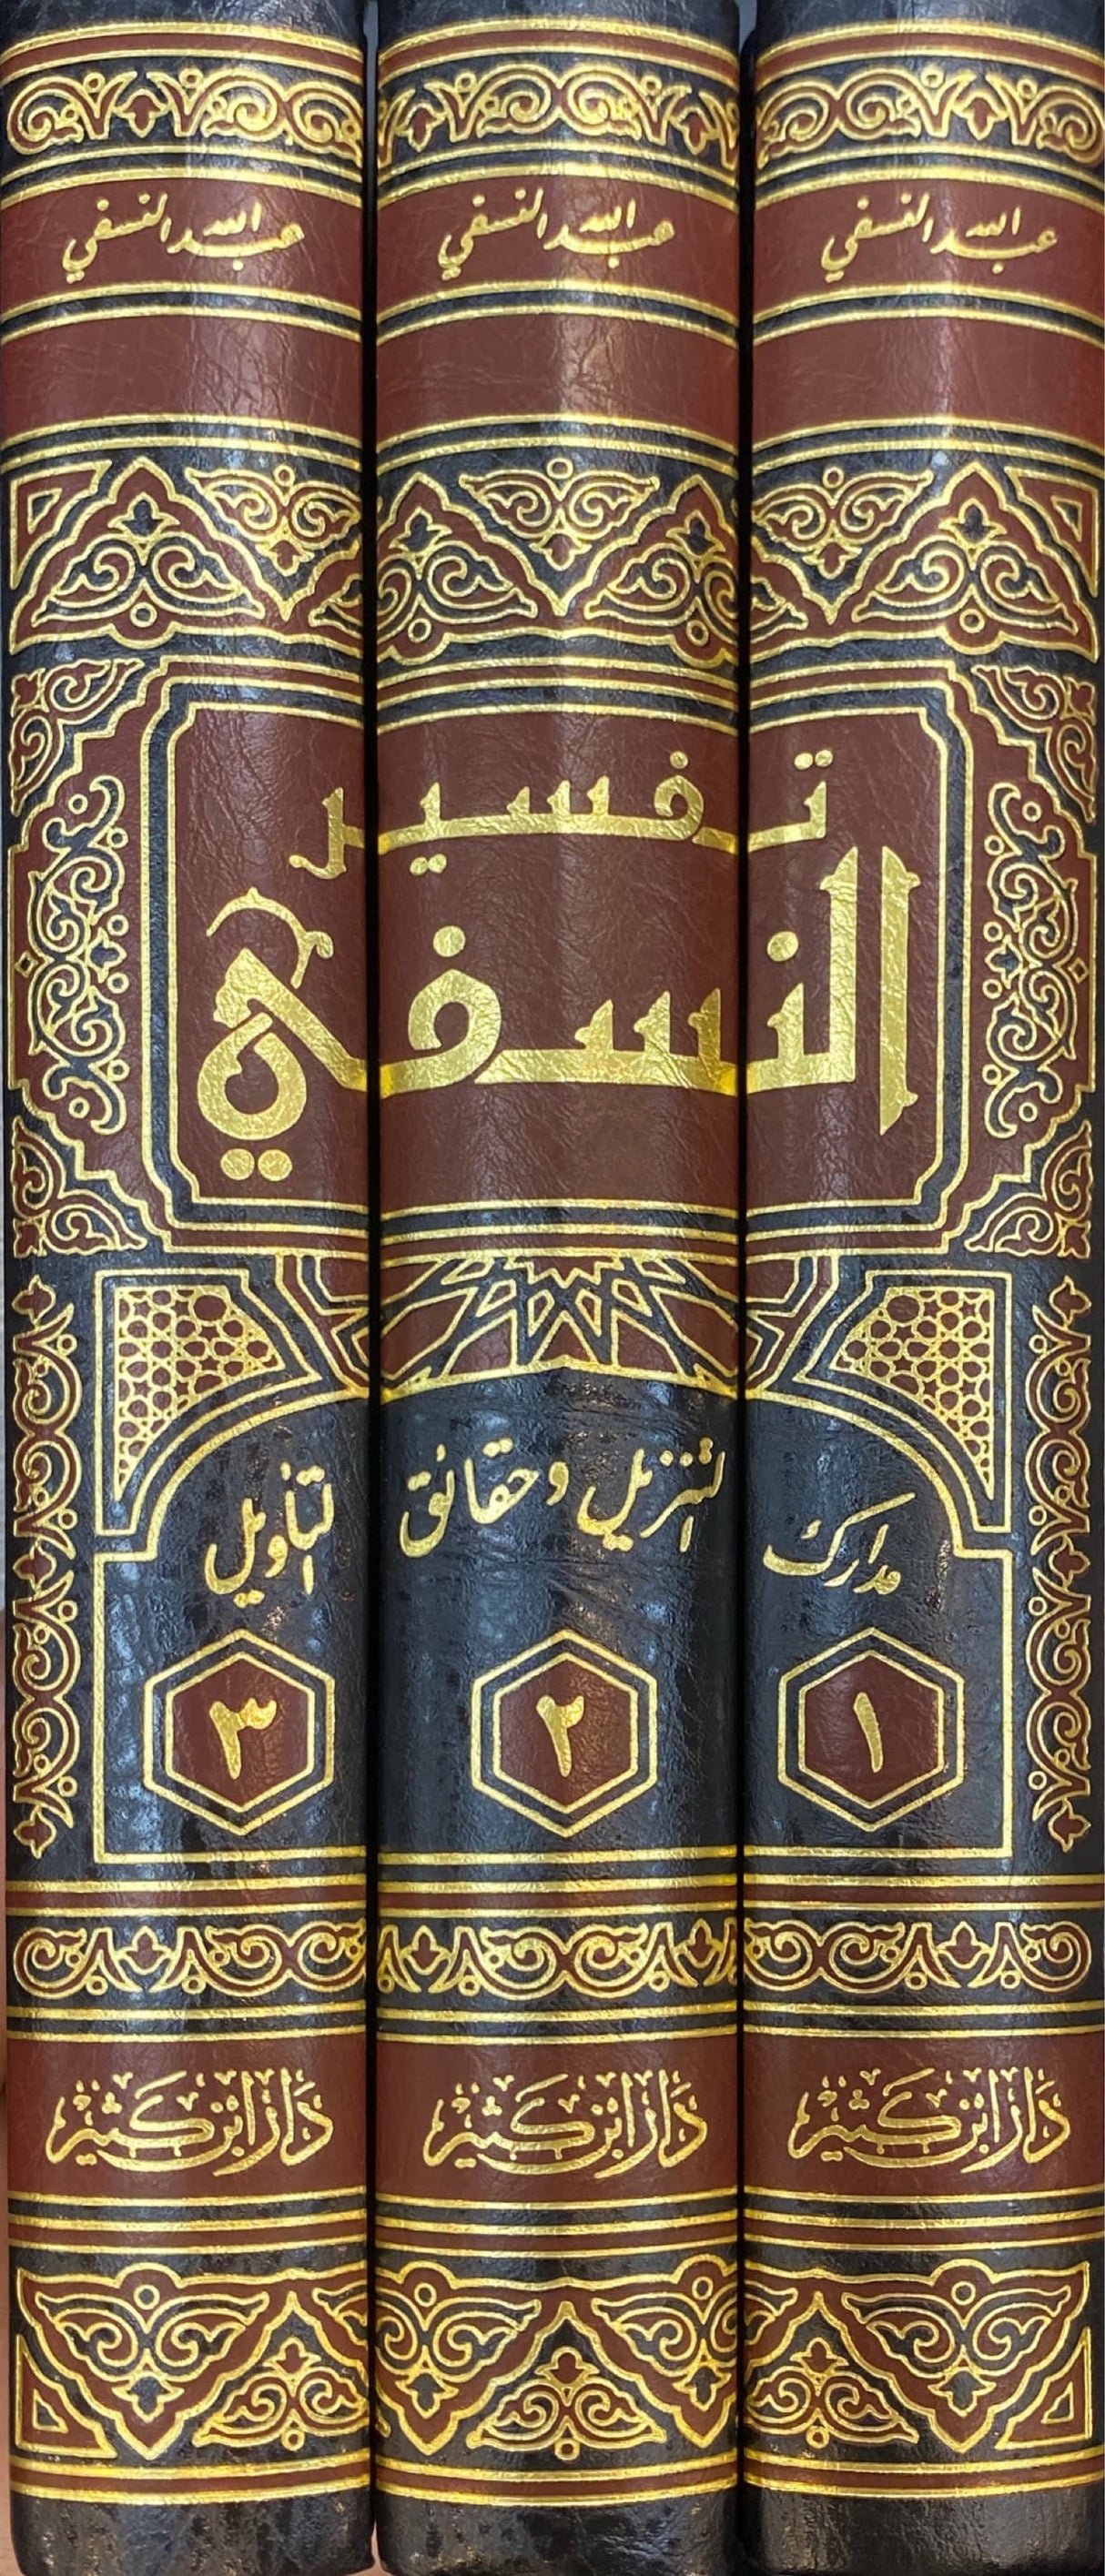 تفسير النسفي   Tafsir An Nasafi (3 Volume Set)